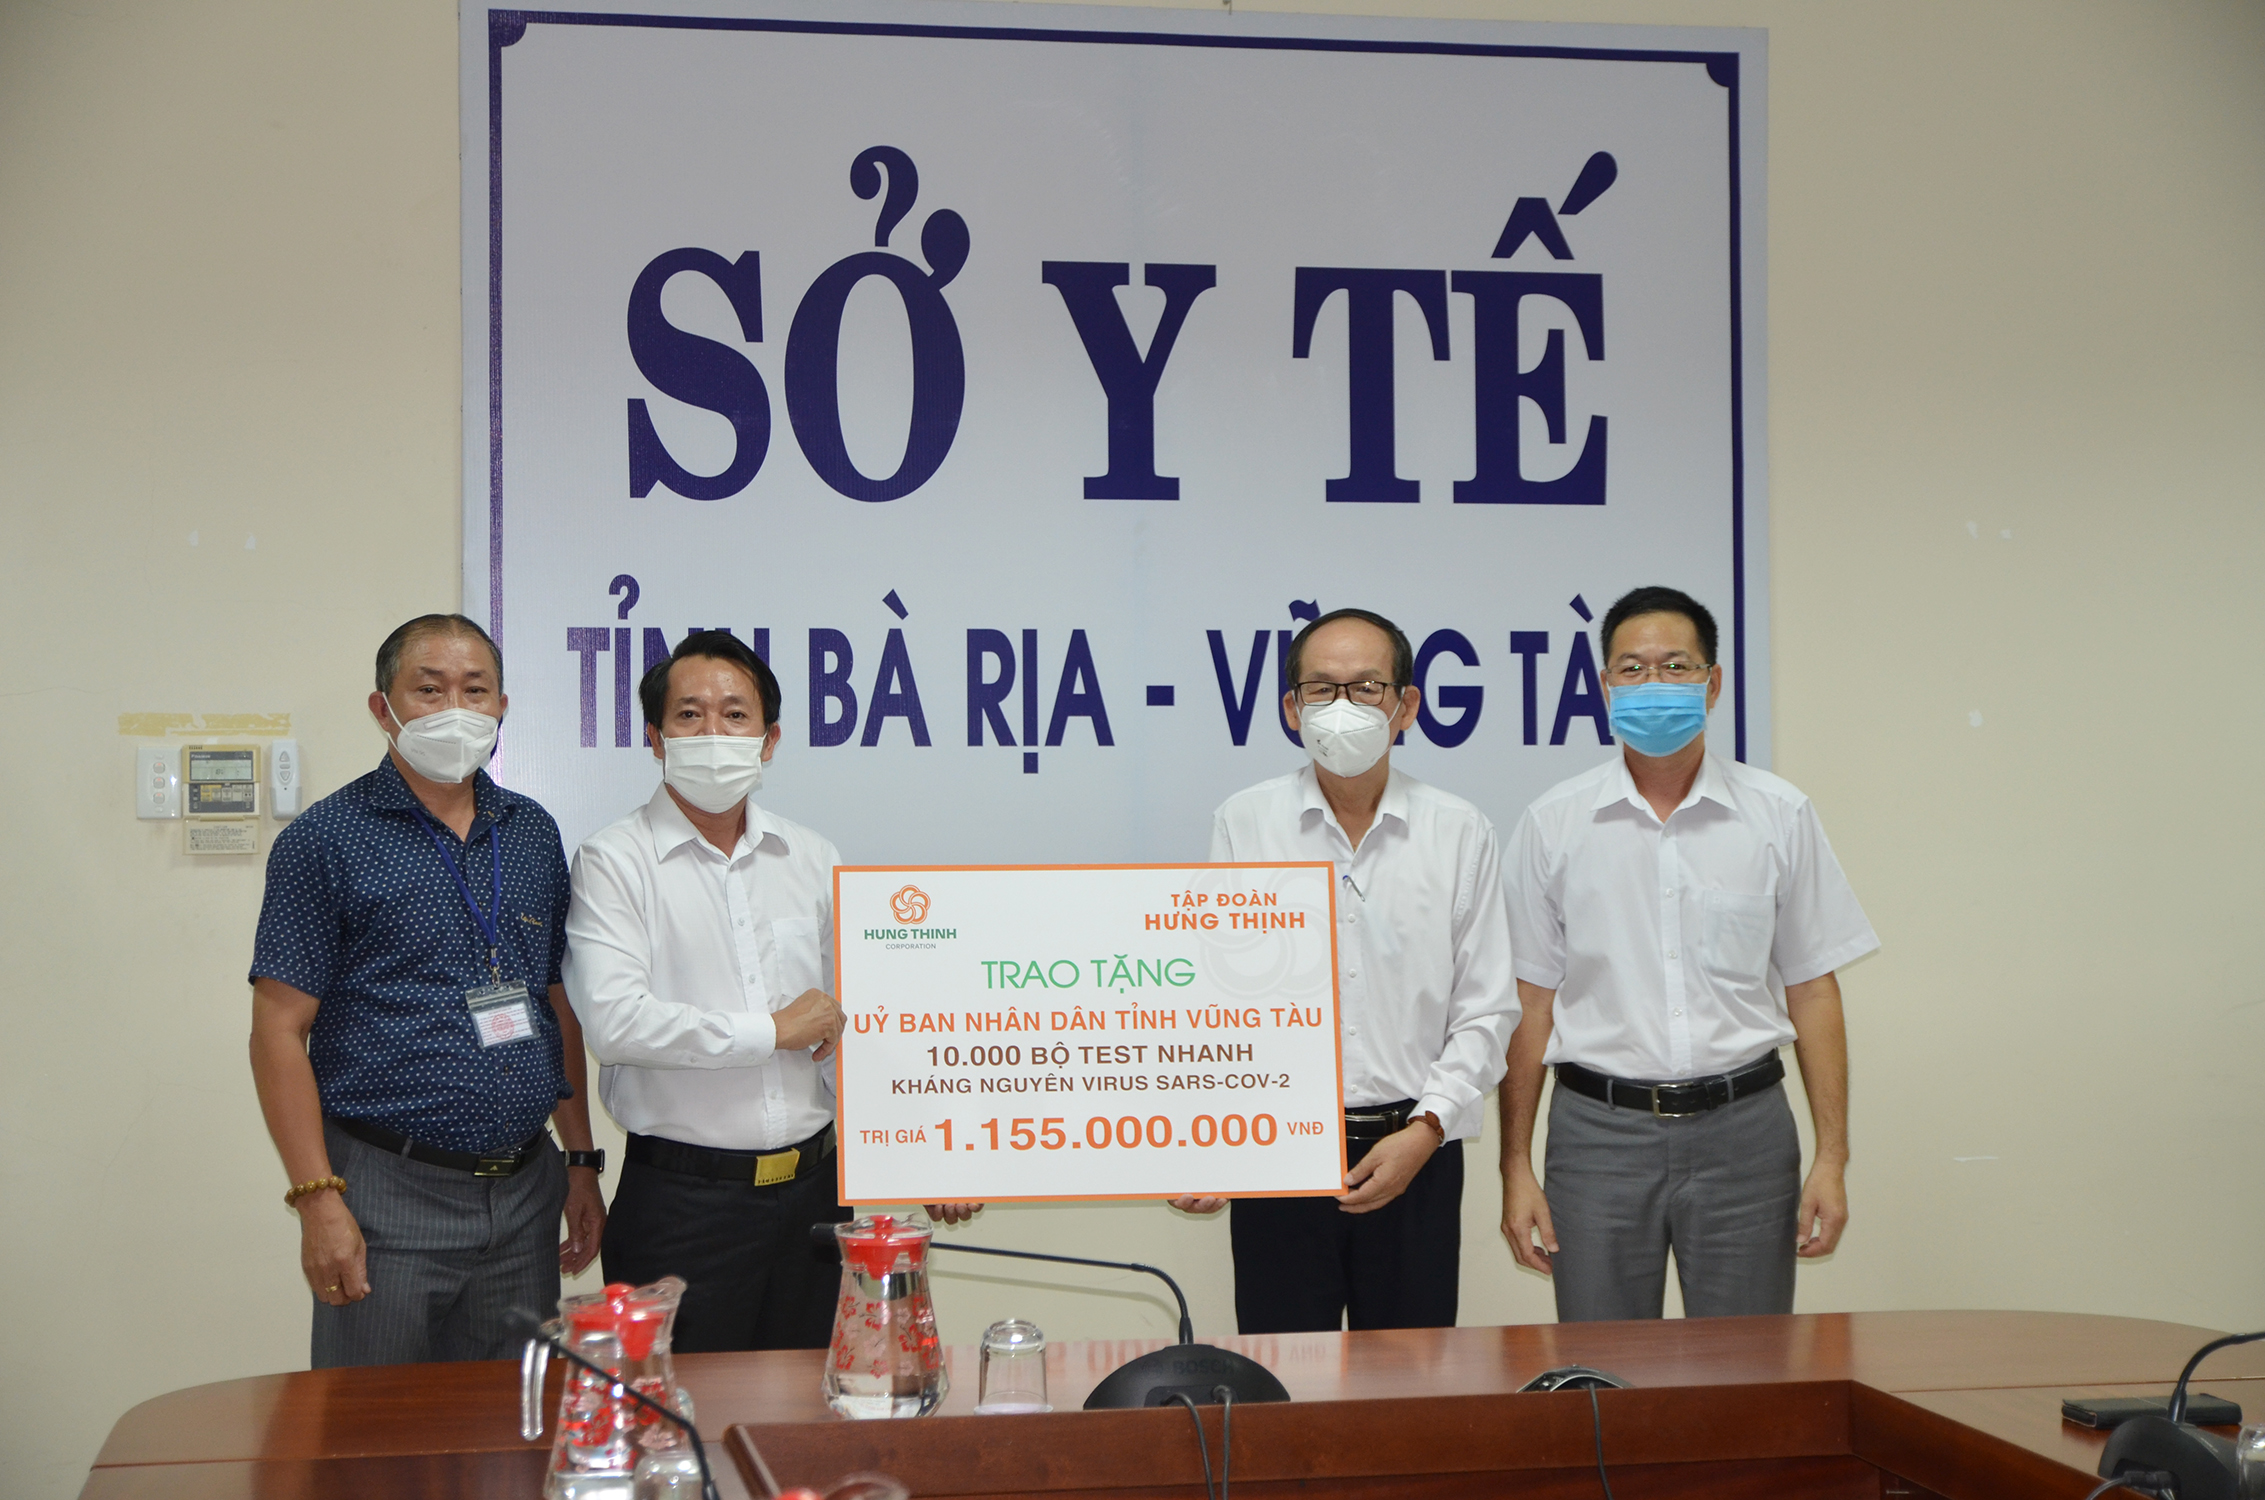 Bác sĩ Lương Văn Quang (thứ 2 từ phải qua), Phó Giám đốc Sở Y tế tiếp nhận bảng tượng trưng tài trợ 10 ngàn bộ test nhanh SARS-CoV-2 từ Tập đoàn Hưng Thịnh.